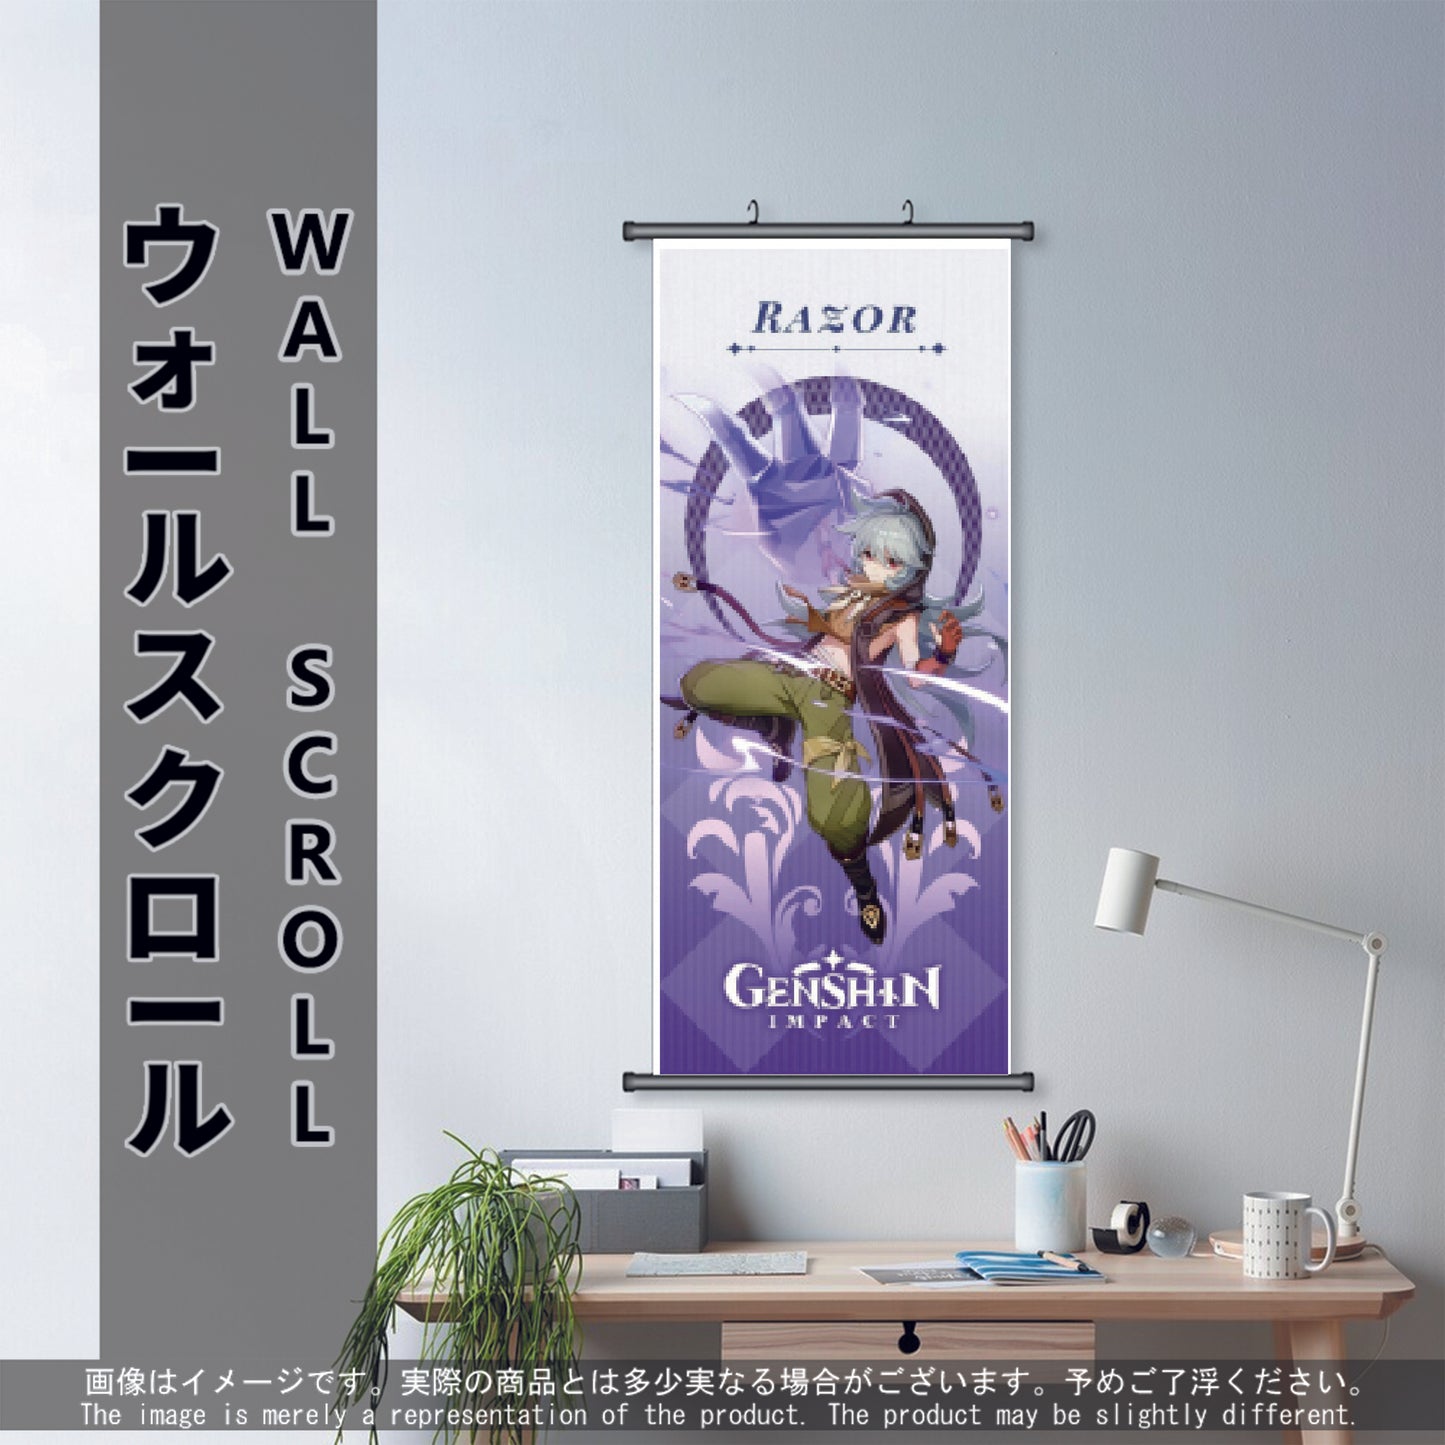 (GSN-ELECTRO-03) RAZOR Genshin Impact Anime Wall Scroll